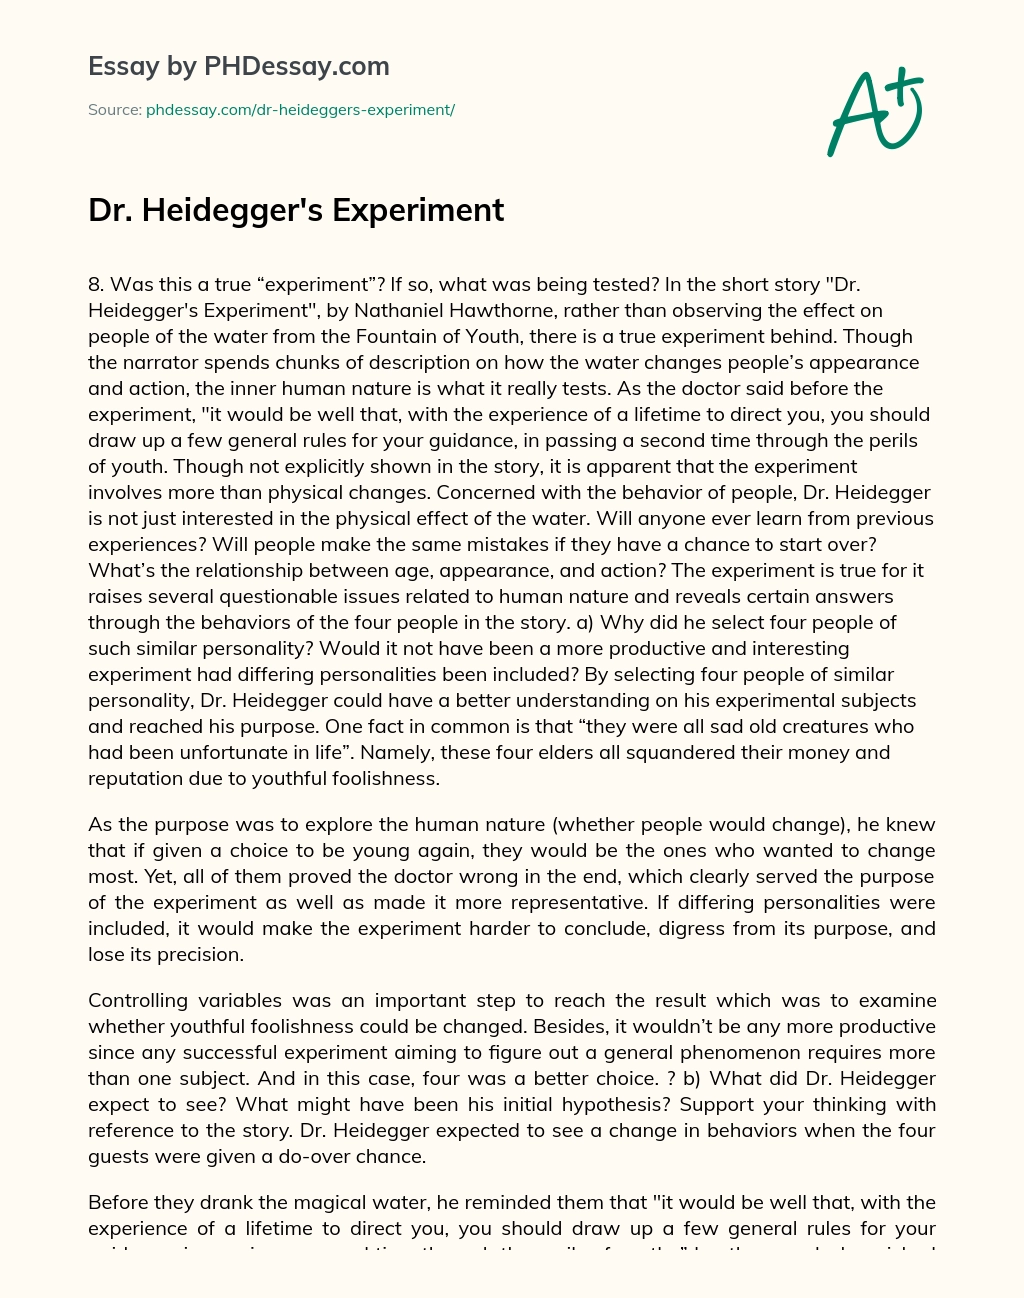 essay on dr heidegger's experiment